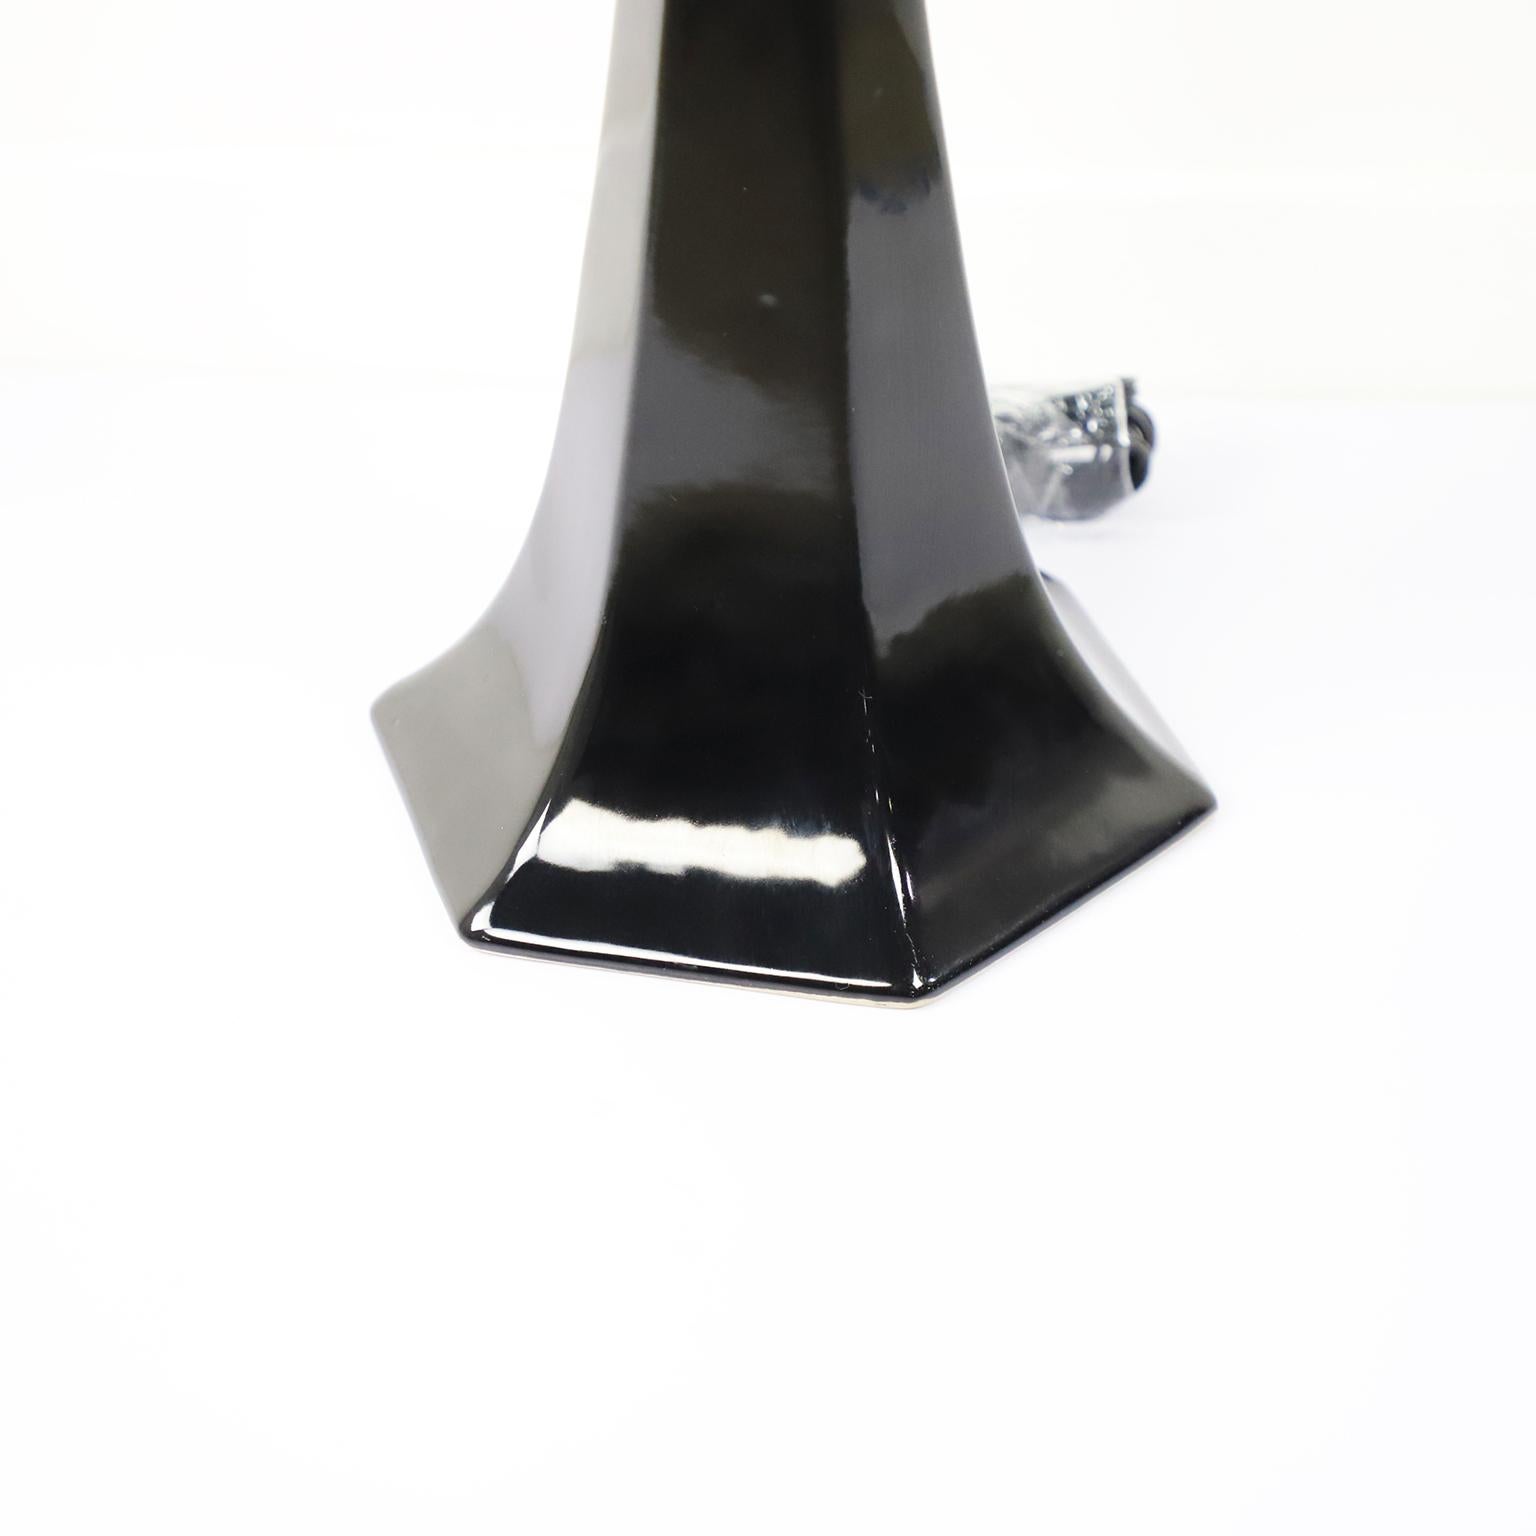 Circa 1940. Nous vous proposons cette fantastique lampe de table Art Déco en céramique et verre.